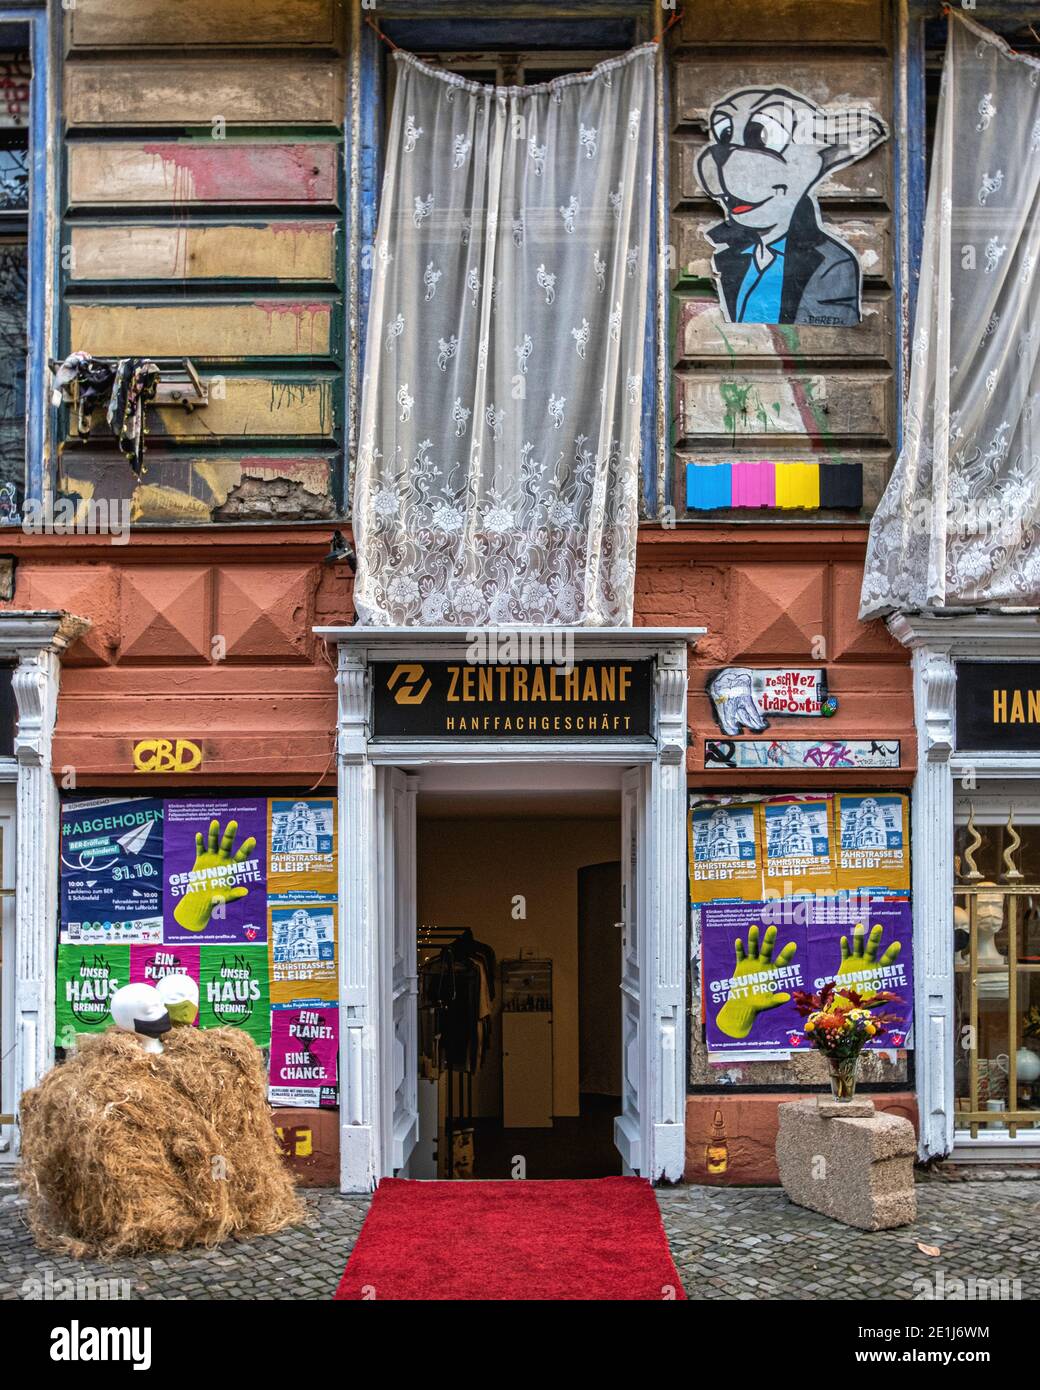 Zentralhanf Shop Exterior - Geschäft mit Hanfkleidung, Masken und Produkten aus Cannabis, Marihuana-Pflanze, Kastanienallee 86, Berlin Stockfoto